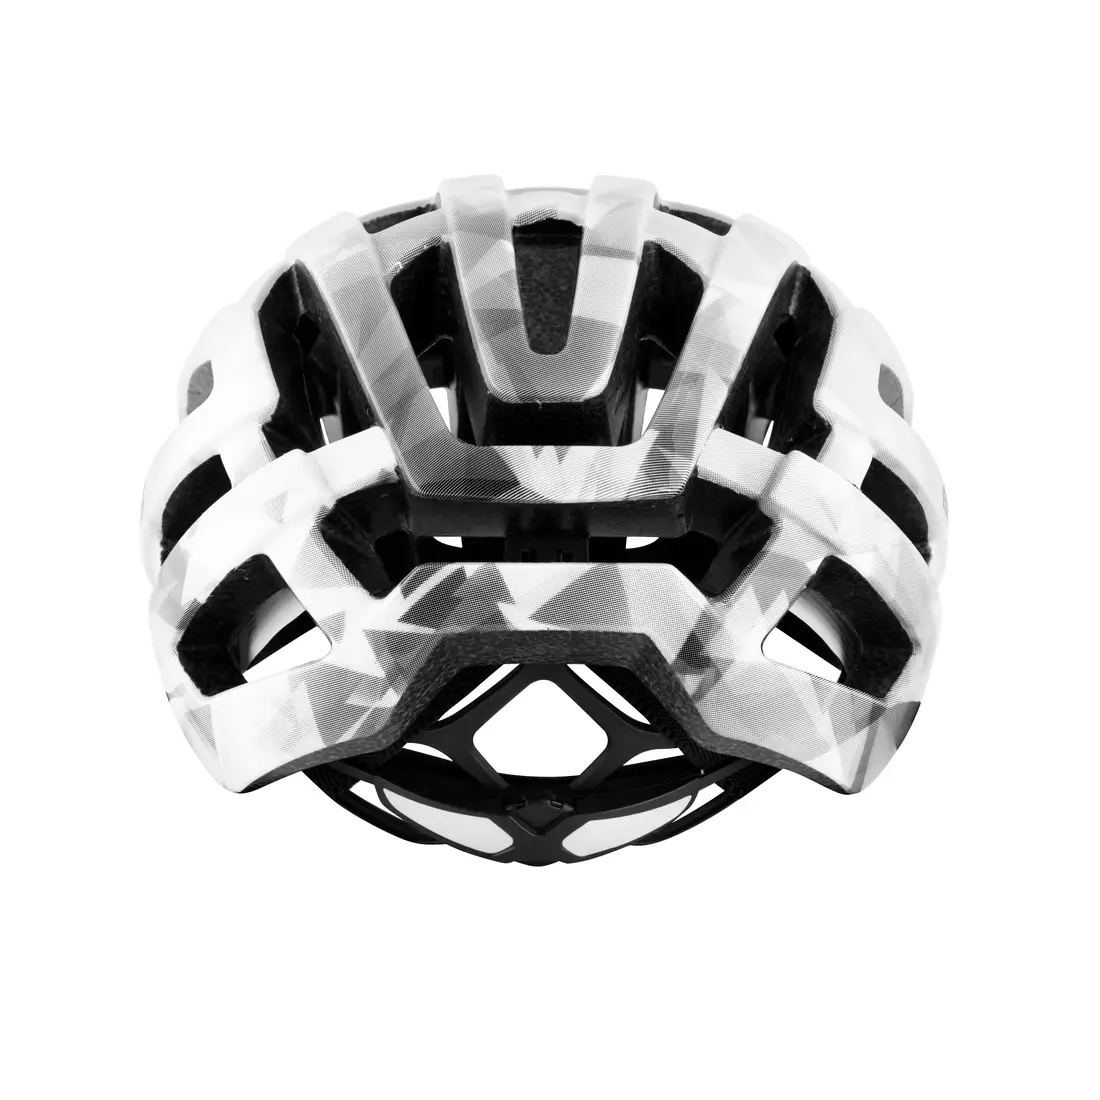 FORCE silniční cyklistická helma HAWK white/black 902773